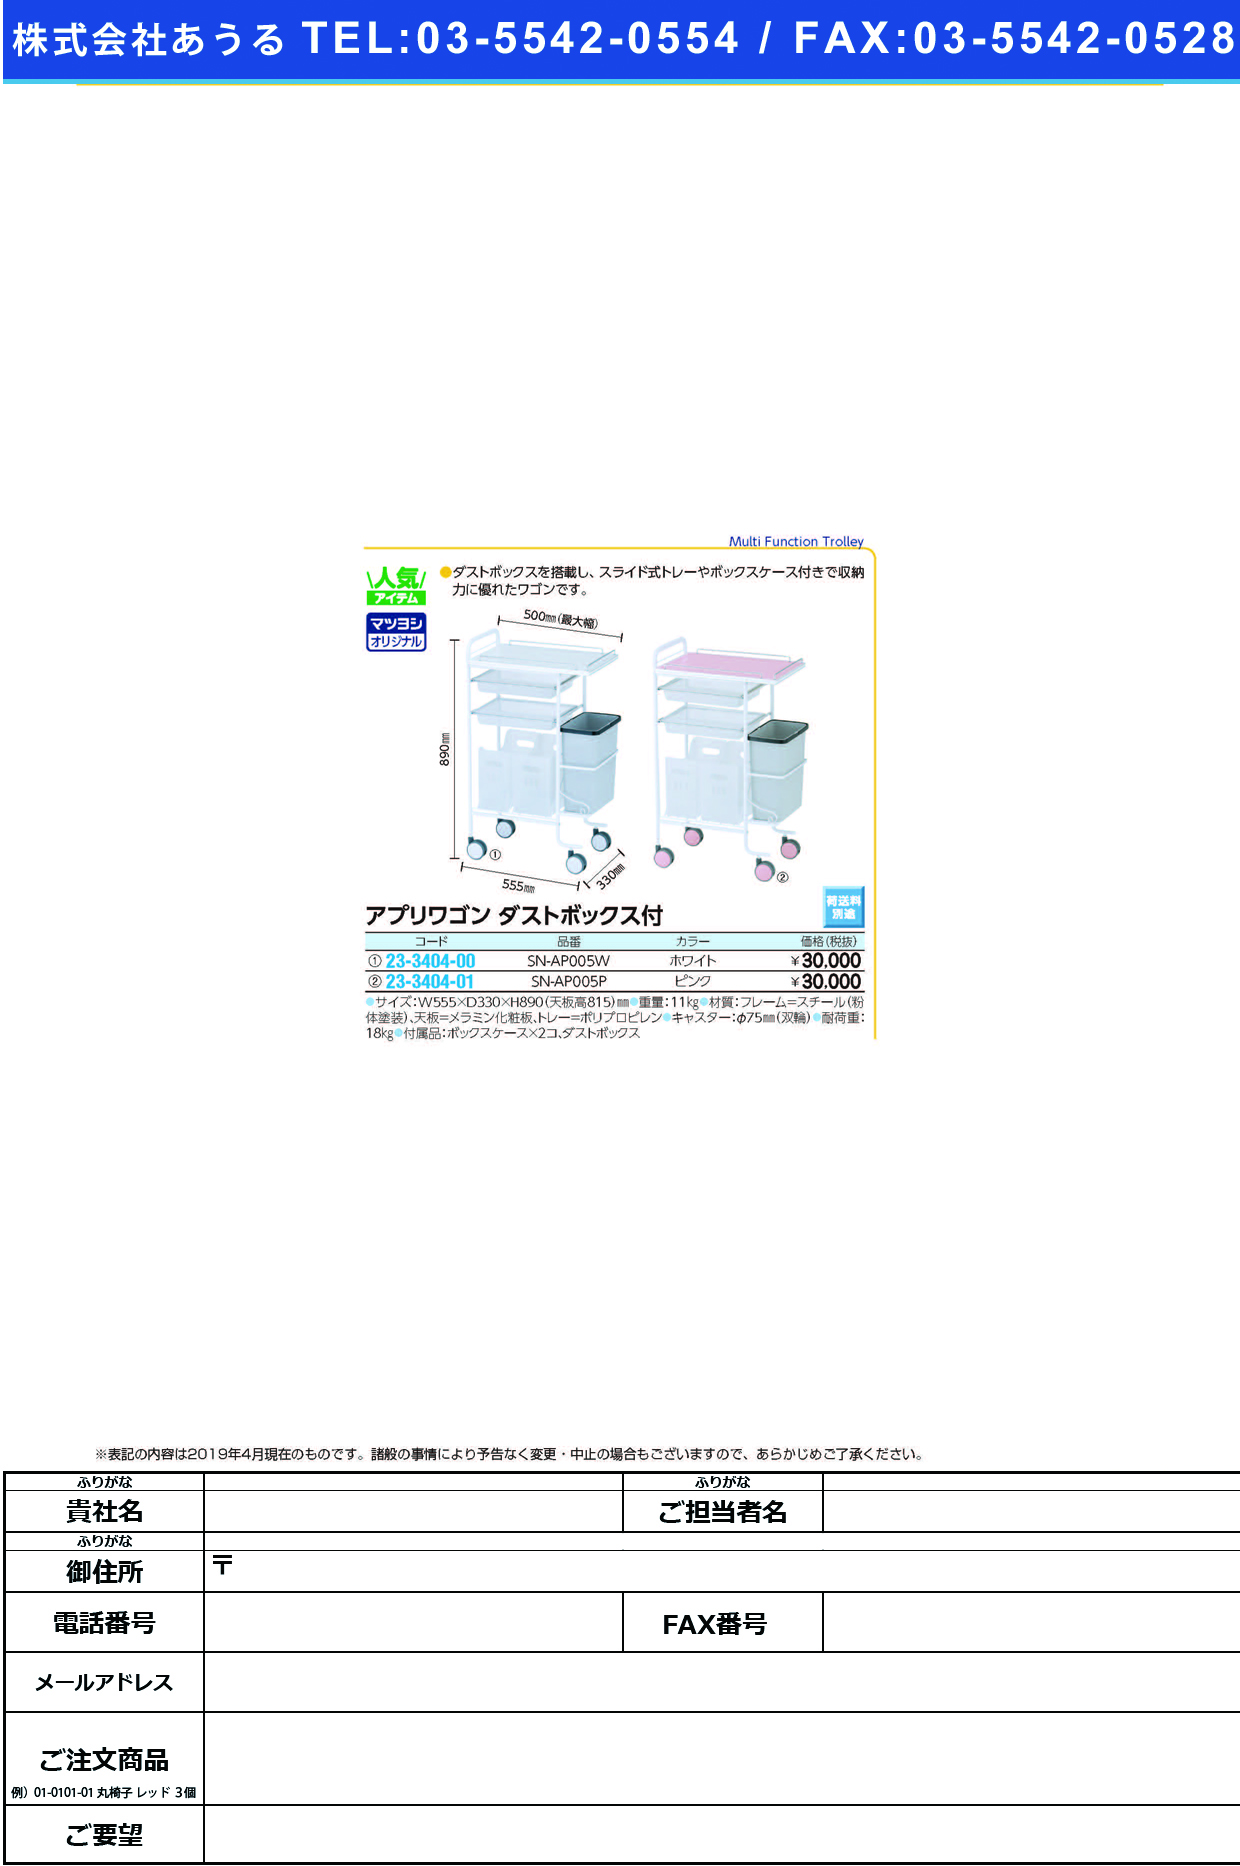 (23-3404-00)アプリワゴン（ダストボックス付） SN-AP005W(ﾎﾜｲﾄ) ｱﾌﾟﾘﾜｺﾞﾝﾀﾞｽﾄﾎﾞｯｸｽﾂｷ【1台単位】【2019年カタログ商品】